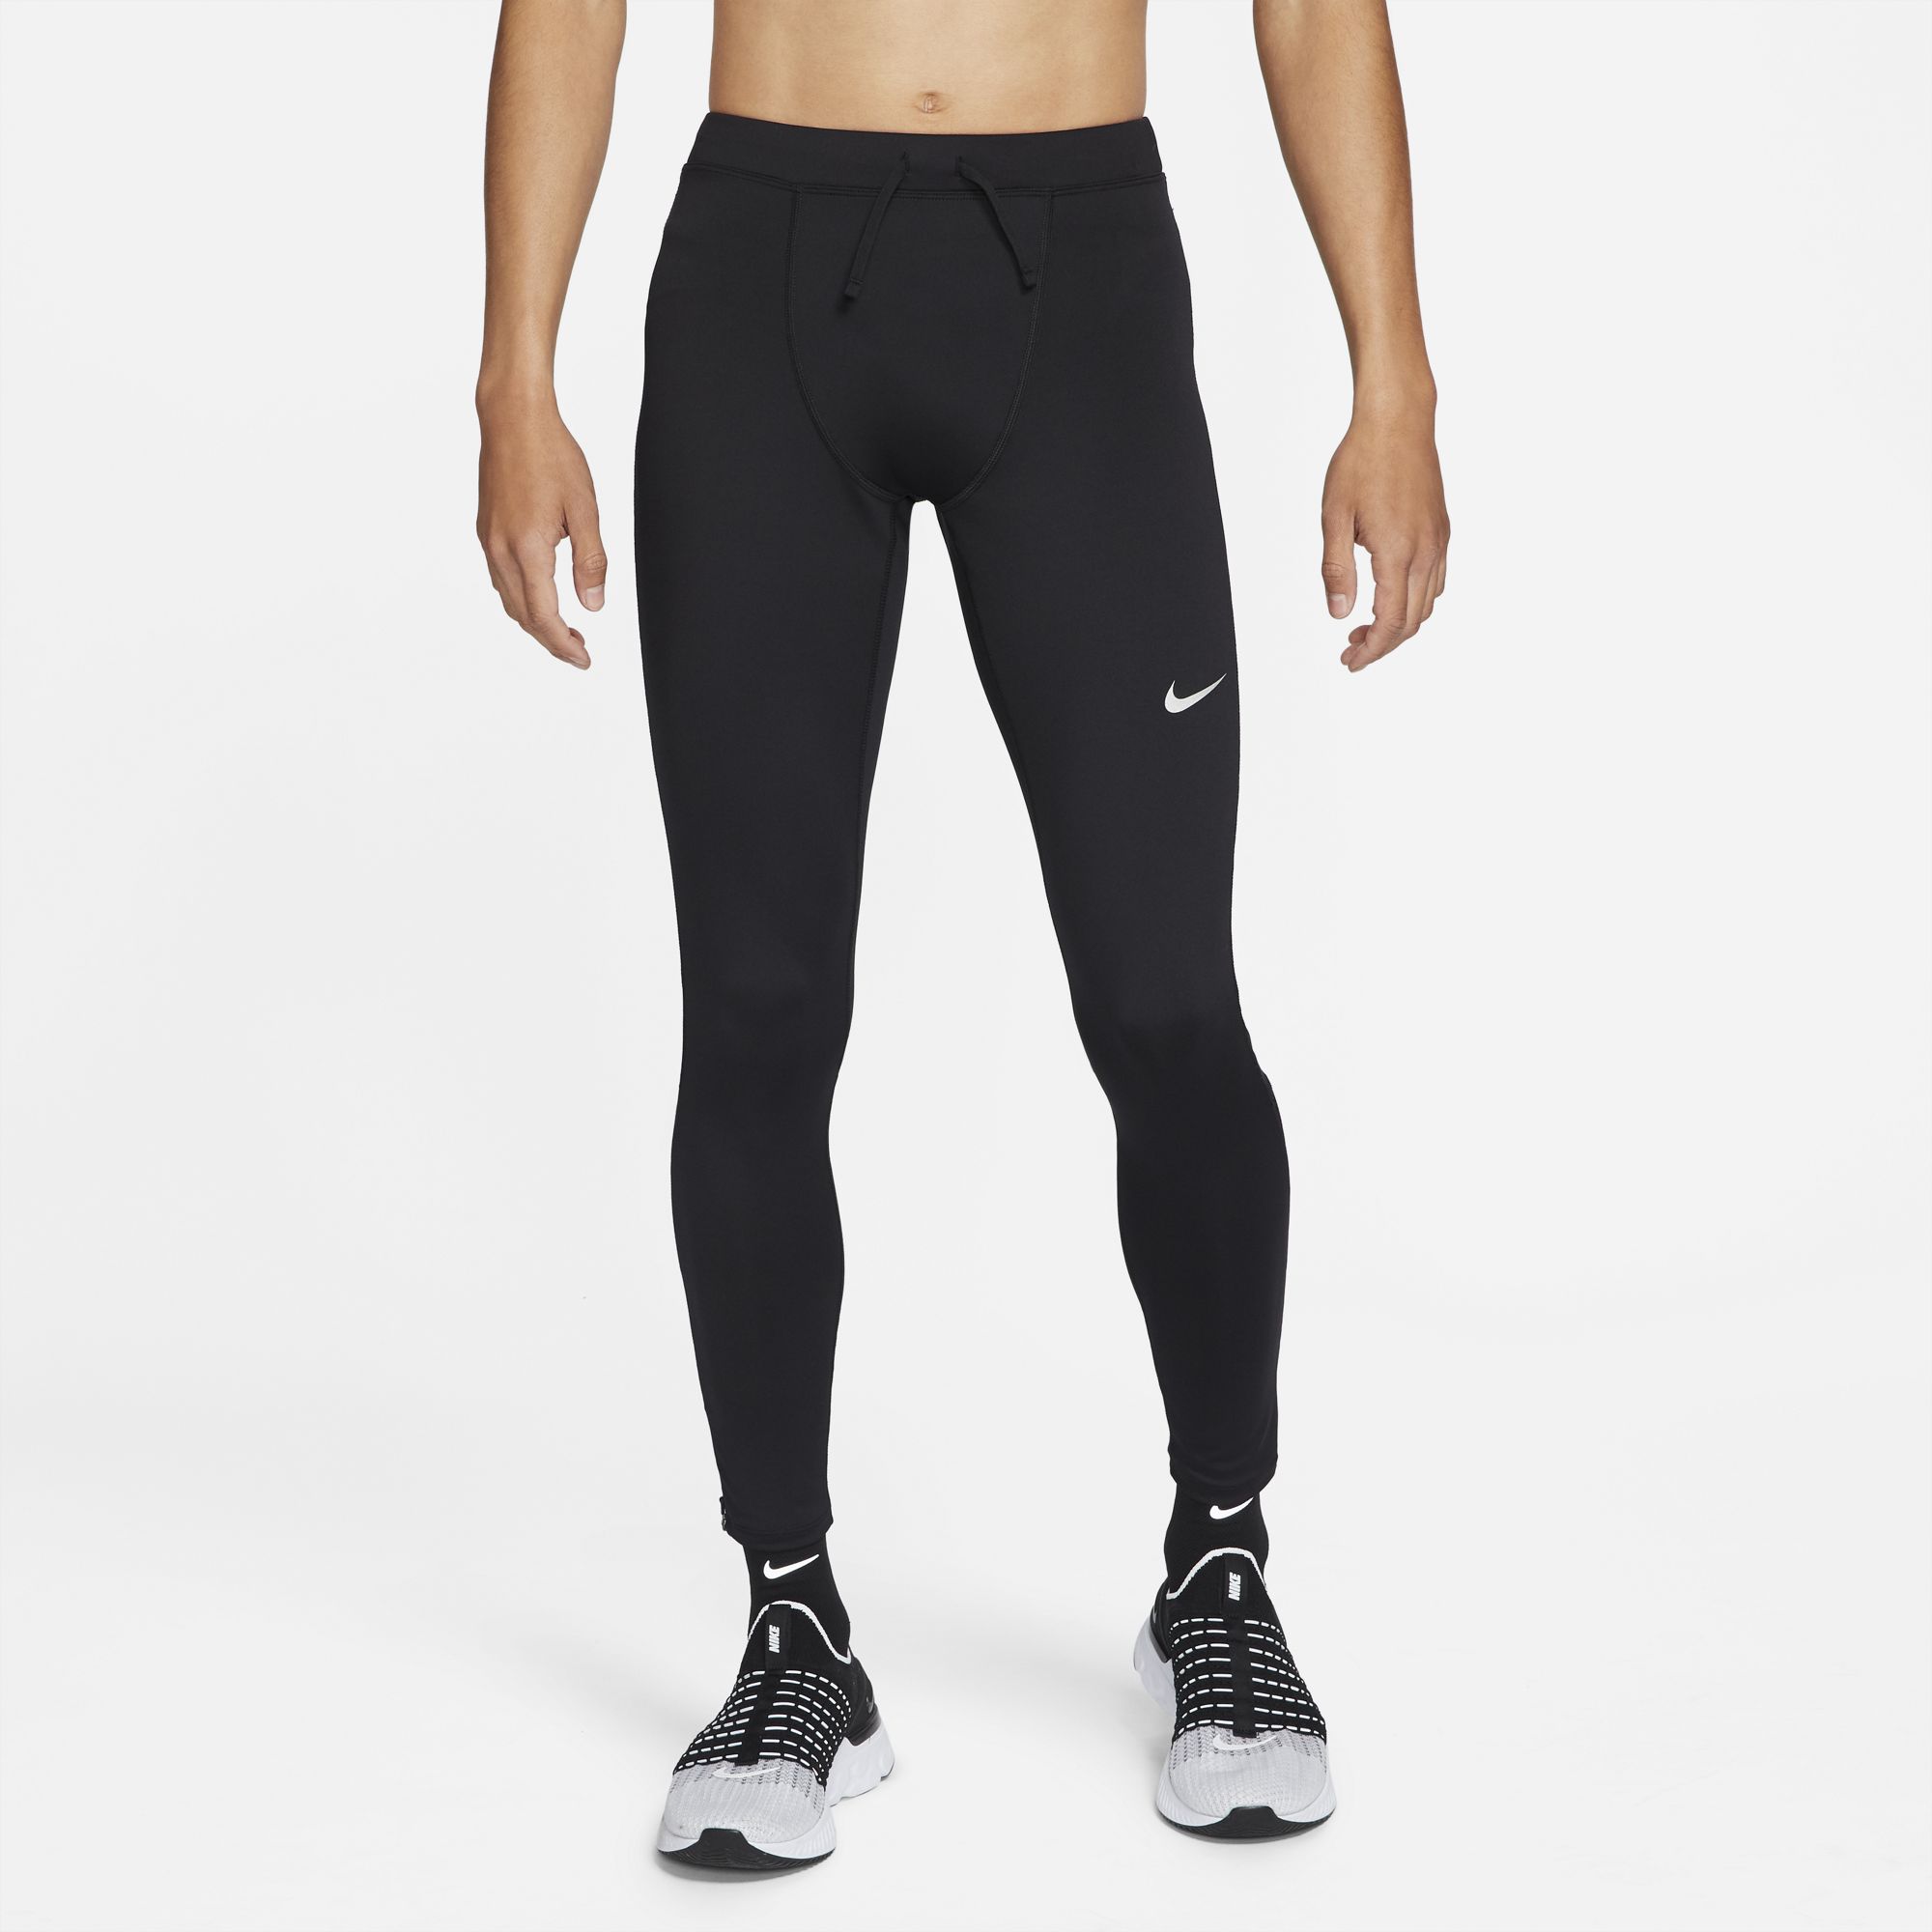 Nike Men's Challenger Running Leggings - Black/Reflective Silver